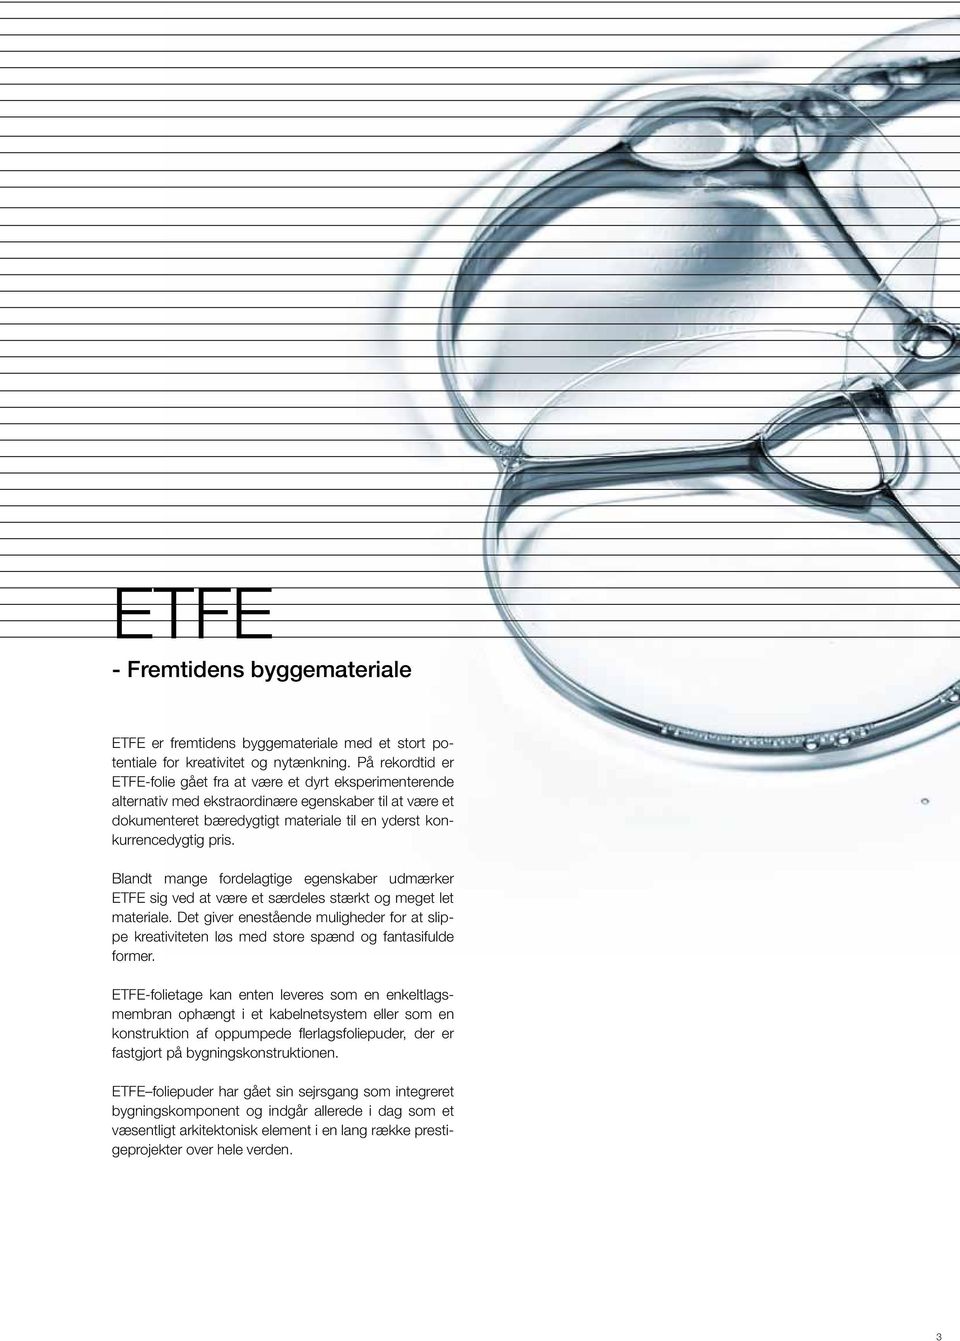 Blandt mange fordelagtige egenskaber udmærker ETFE sig ved at være et særdeles stærkt og meget let materiale.